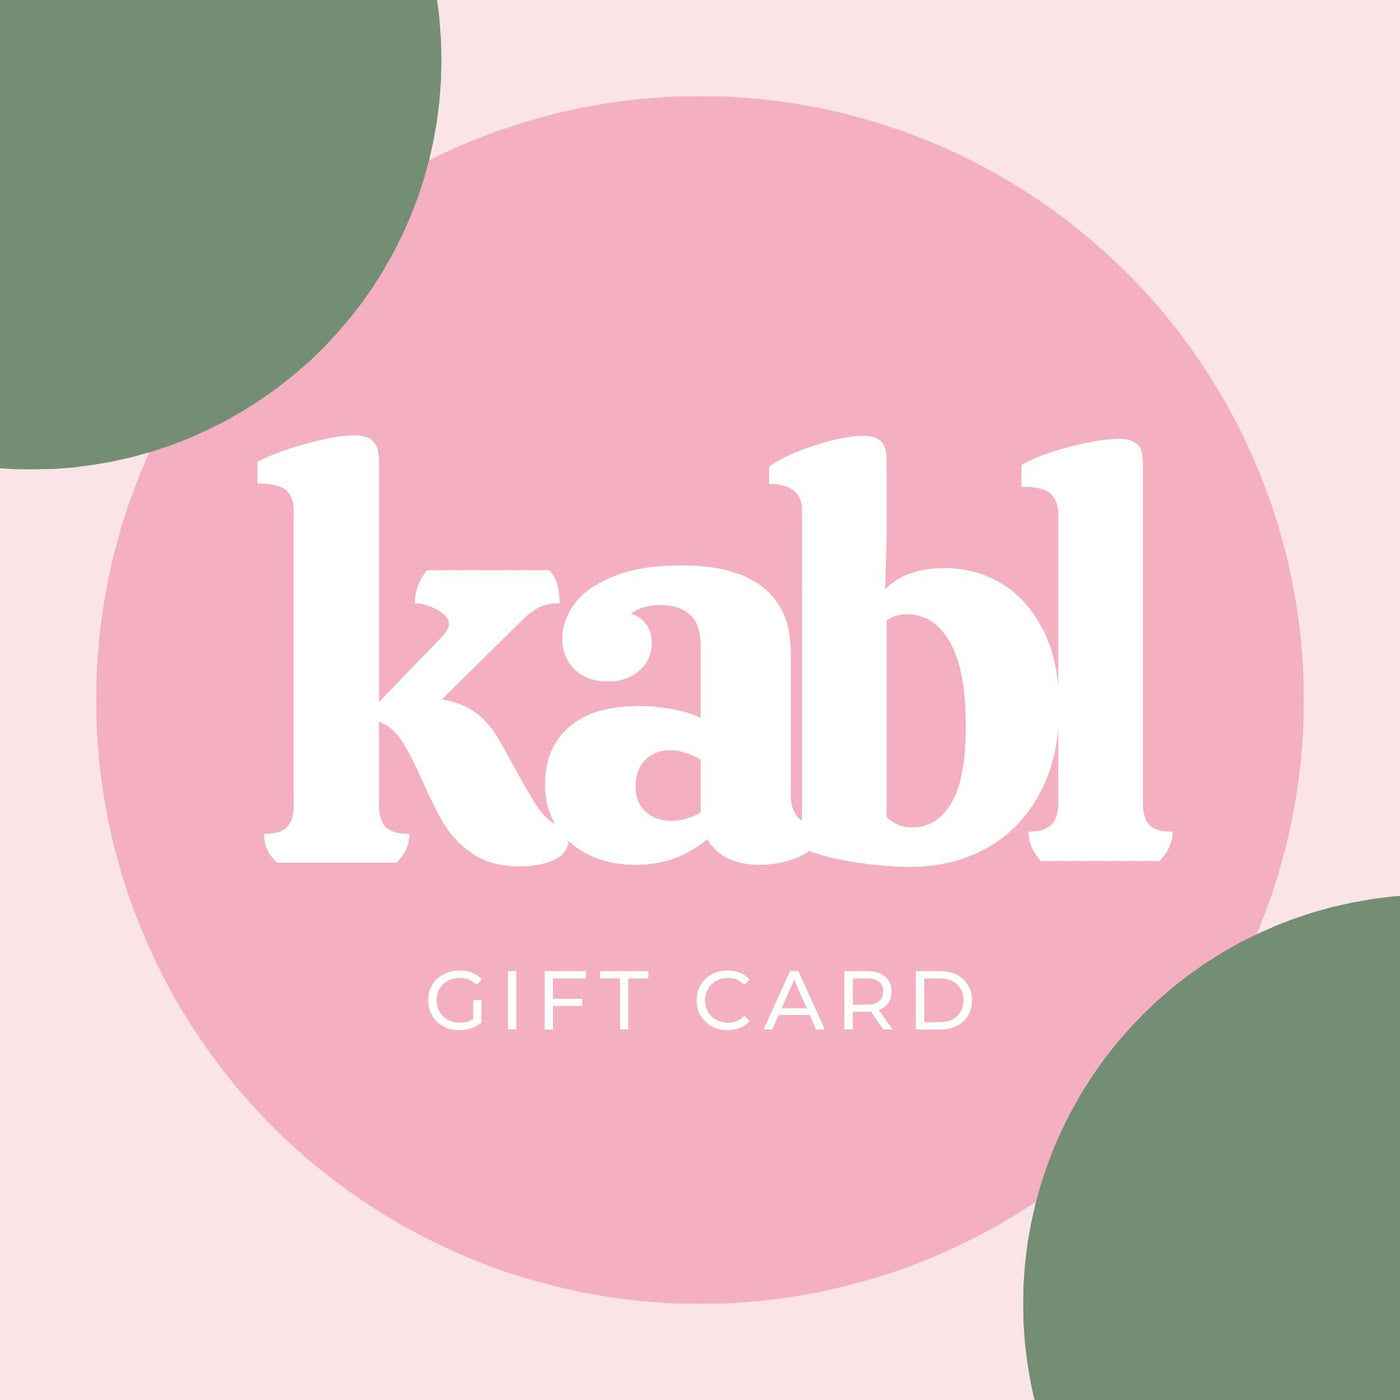 KABL GIFT CARD